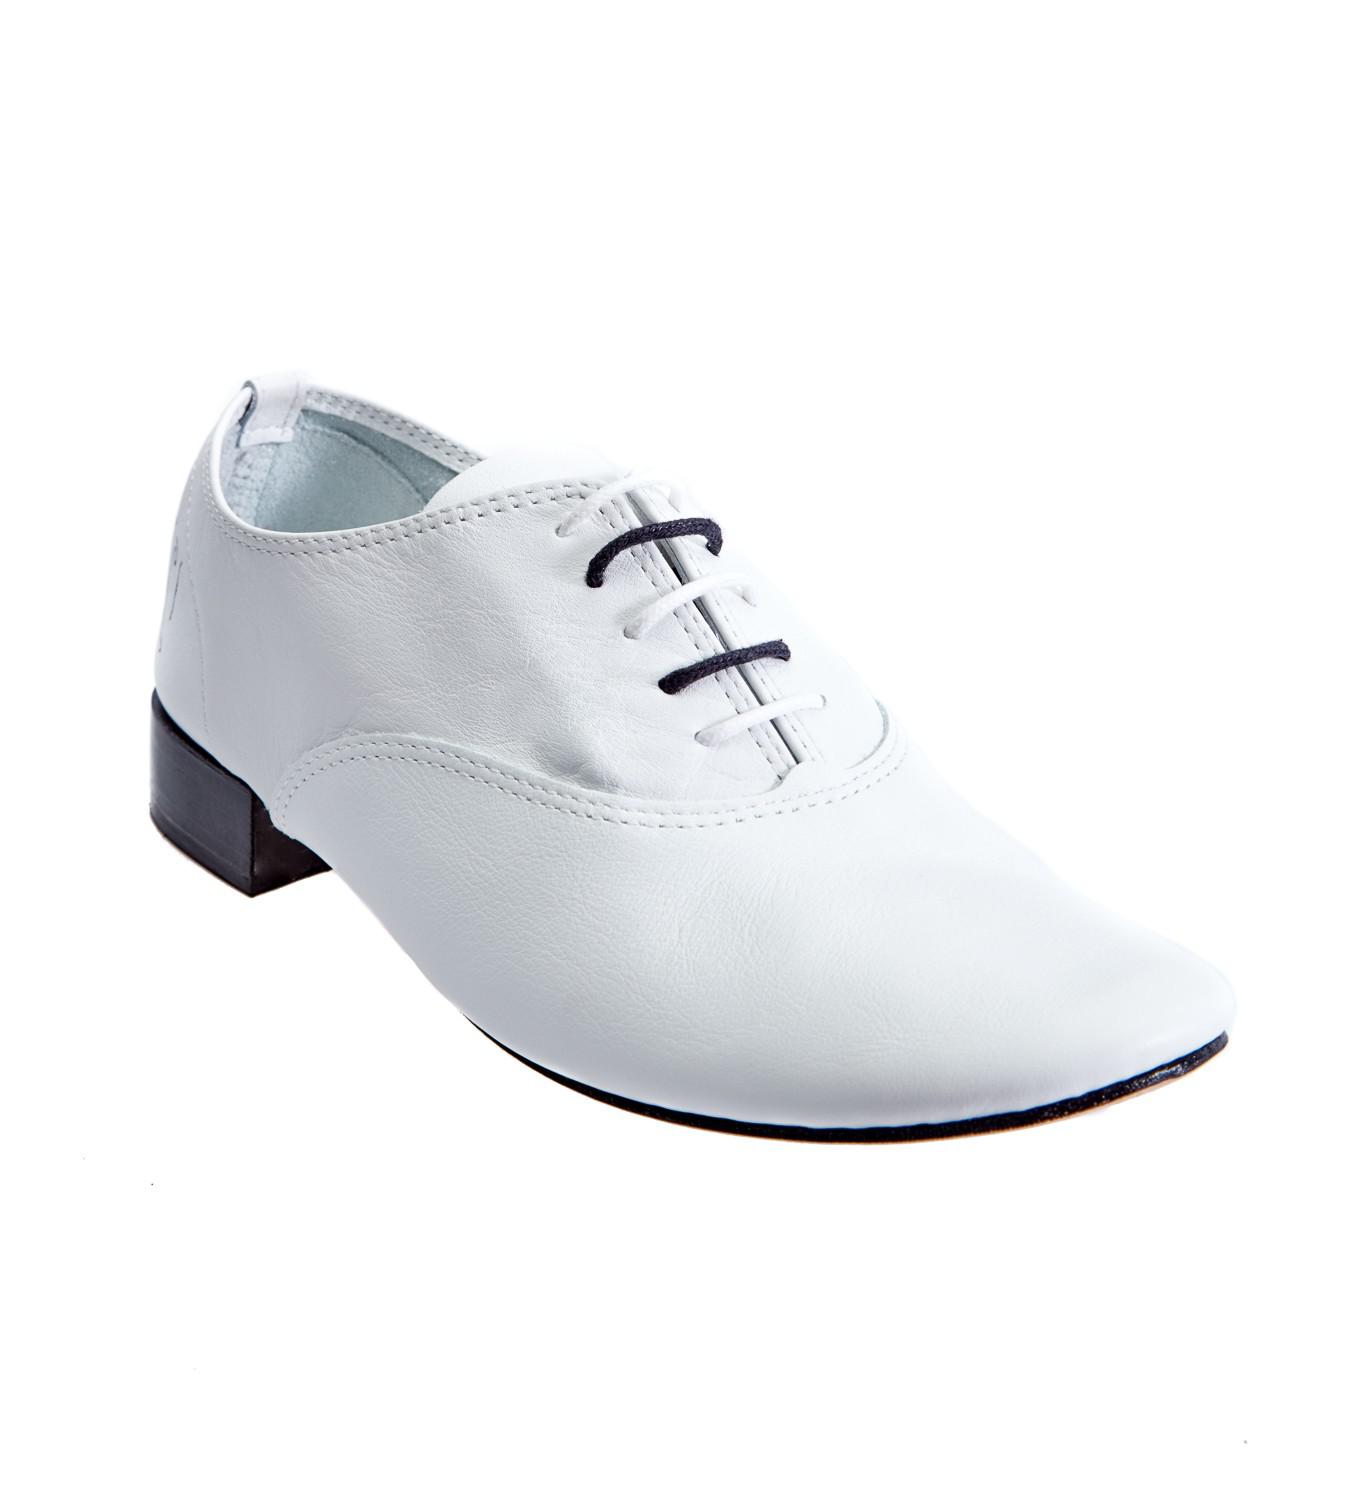 Repetto Leather Zizi 1978 Original White Oxford Shoes for Men - Lyst